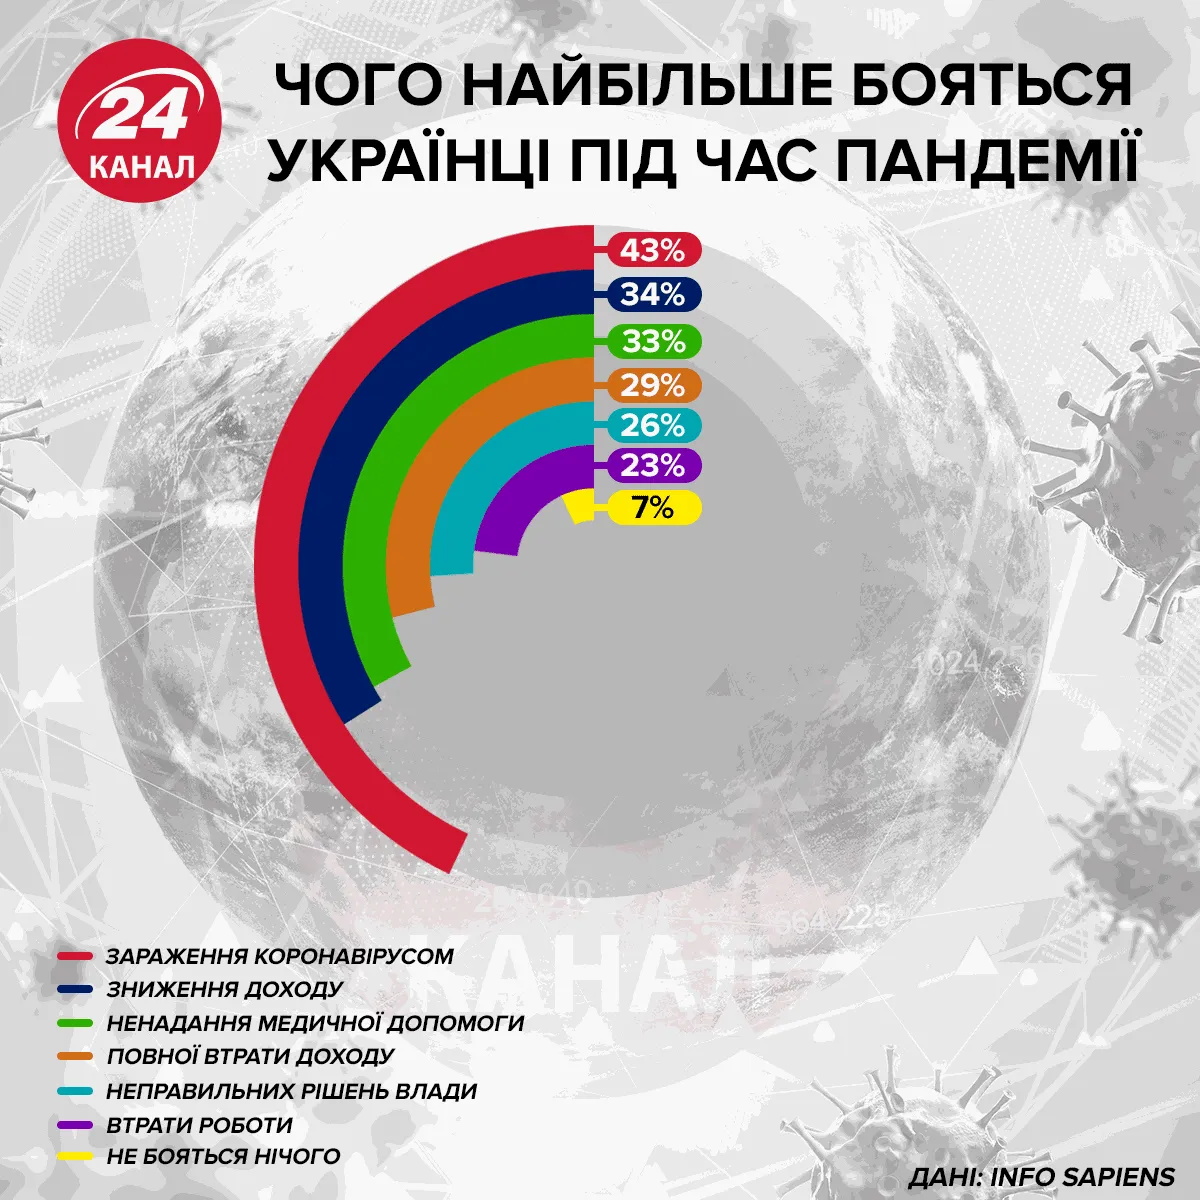 Чего больше всего боятся украинцы во время пандемии Инфографика 24 канала